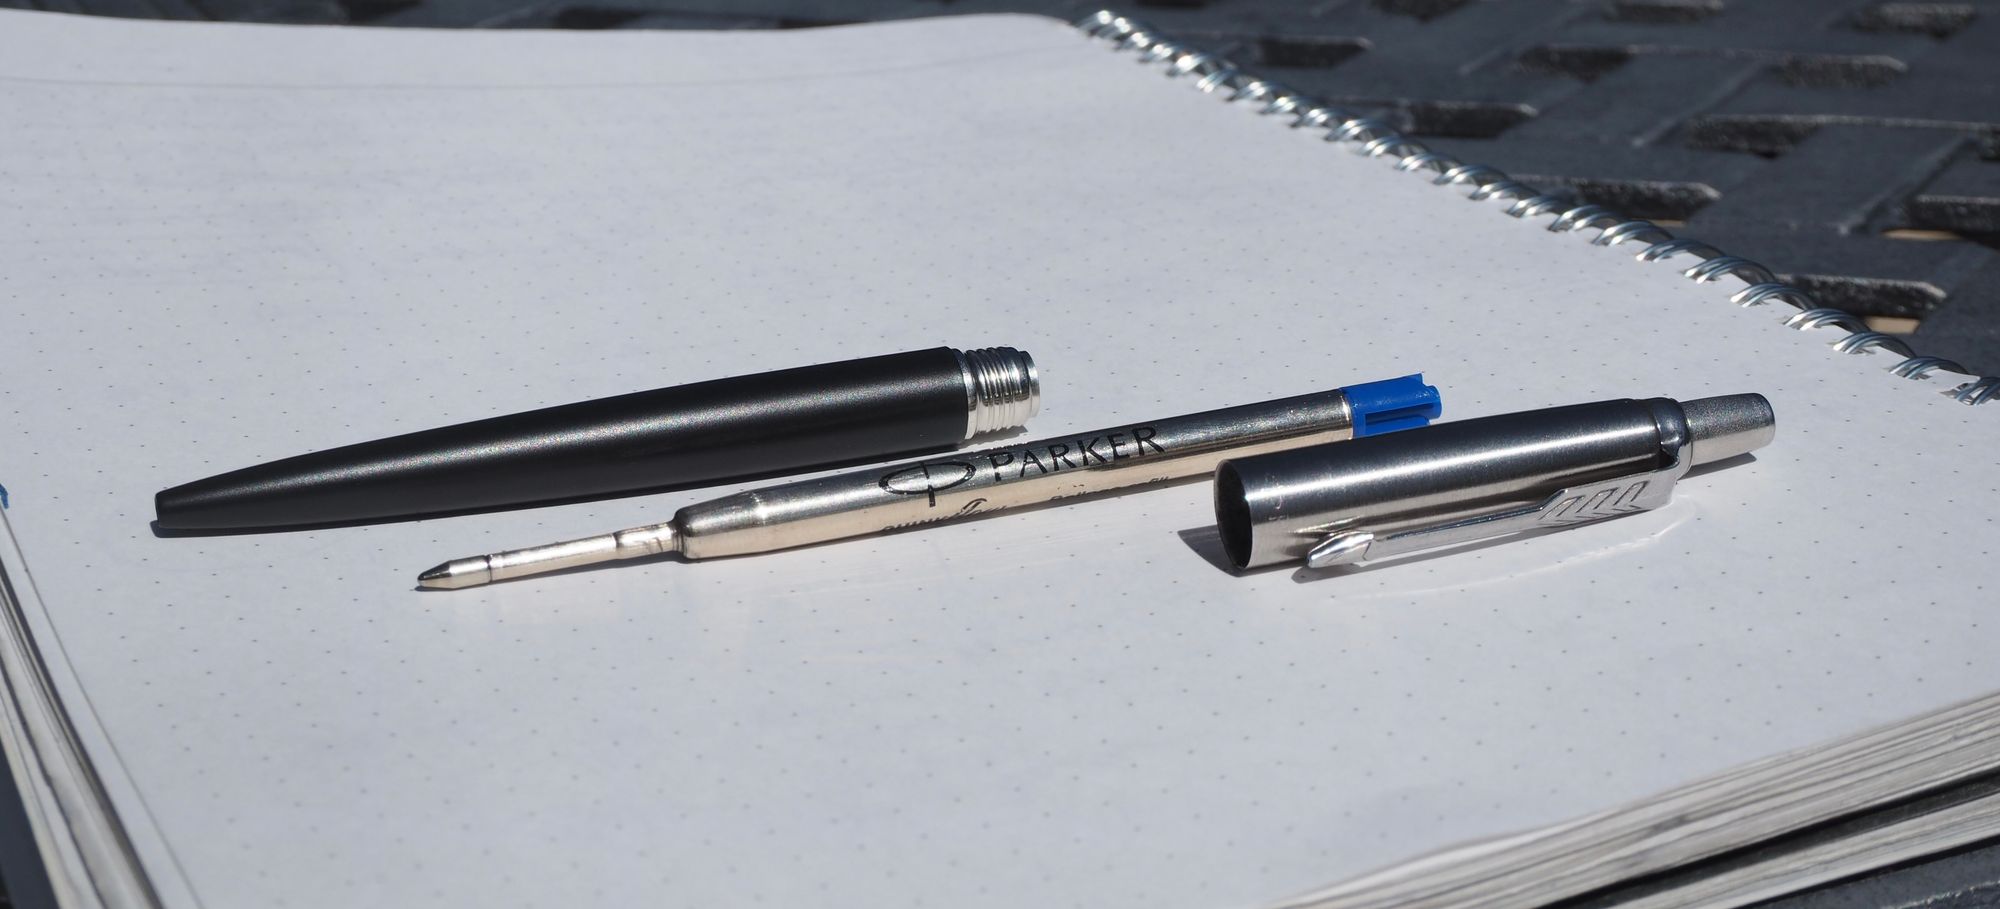 Parker Jotter Ballpoint Pen Review — The Pen Addict